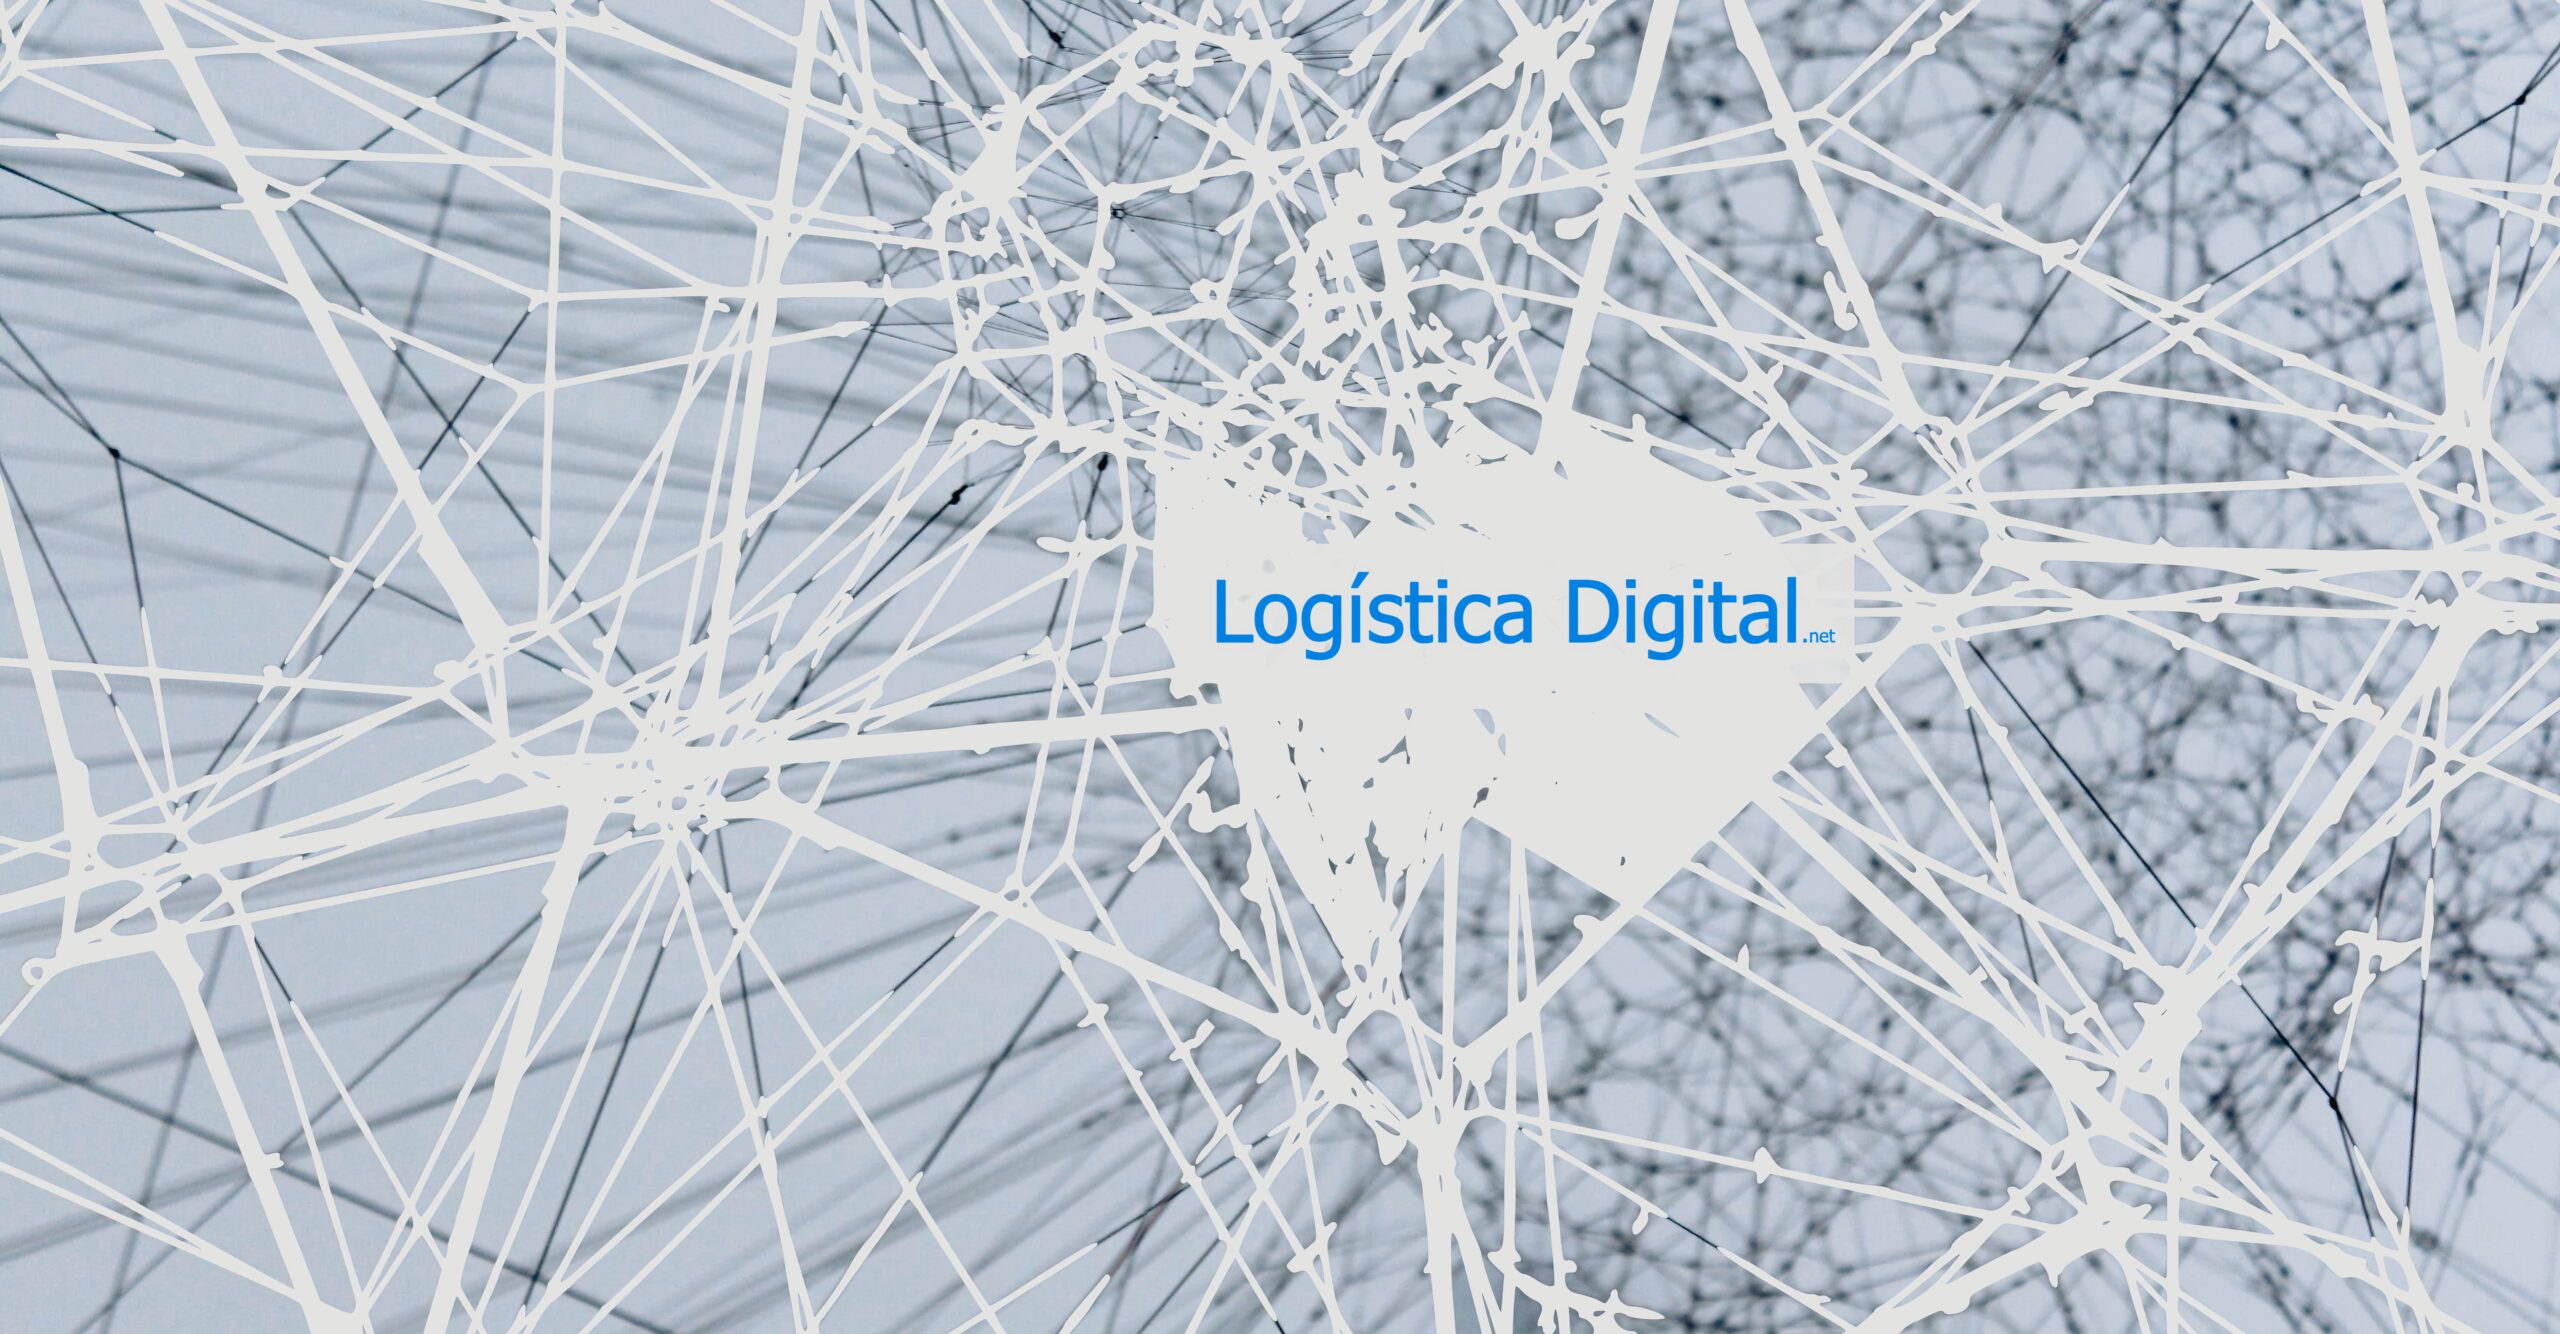 Empresa Logística, Transporte, Supply chain: ¿Campaña publicidad en Google Ads?